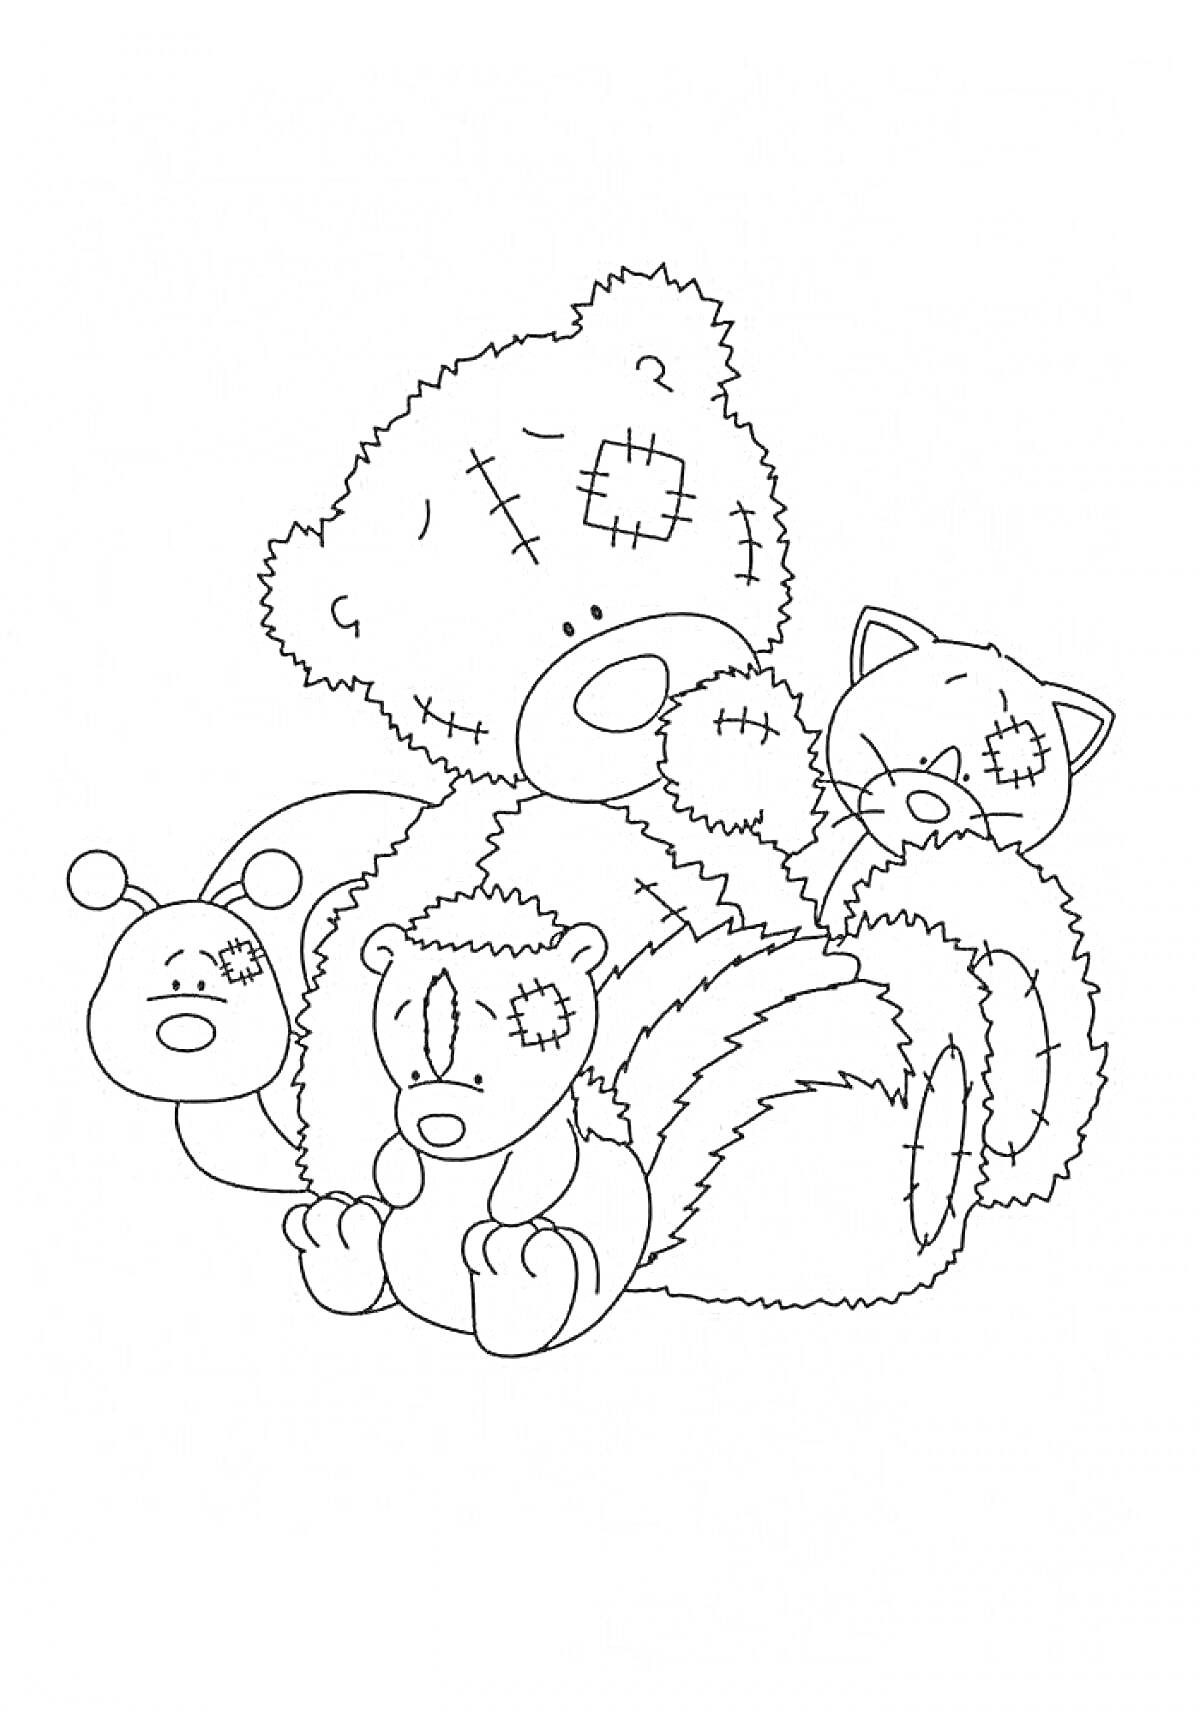 Раскраска Мишка Тедди с друзьями — котенком, гусеницей и другим мишкой с латками